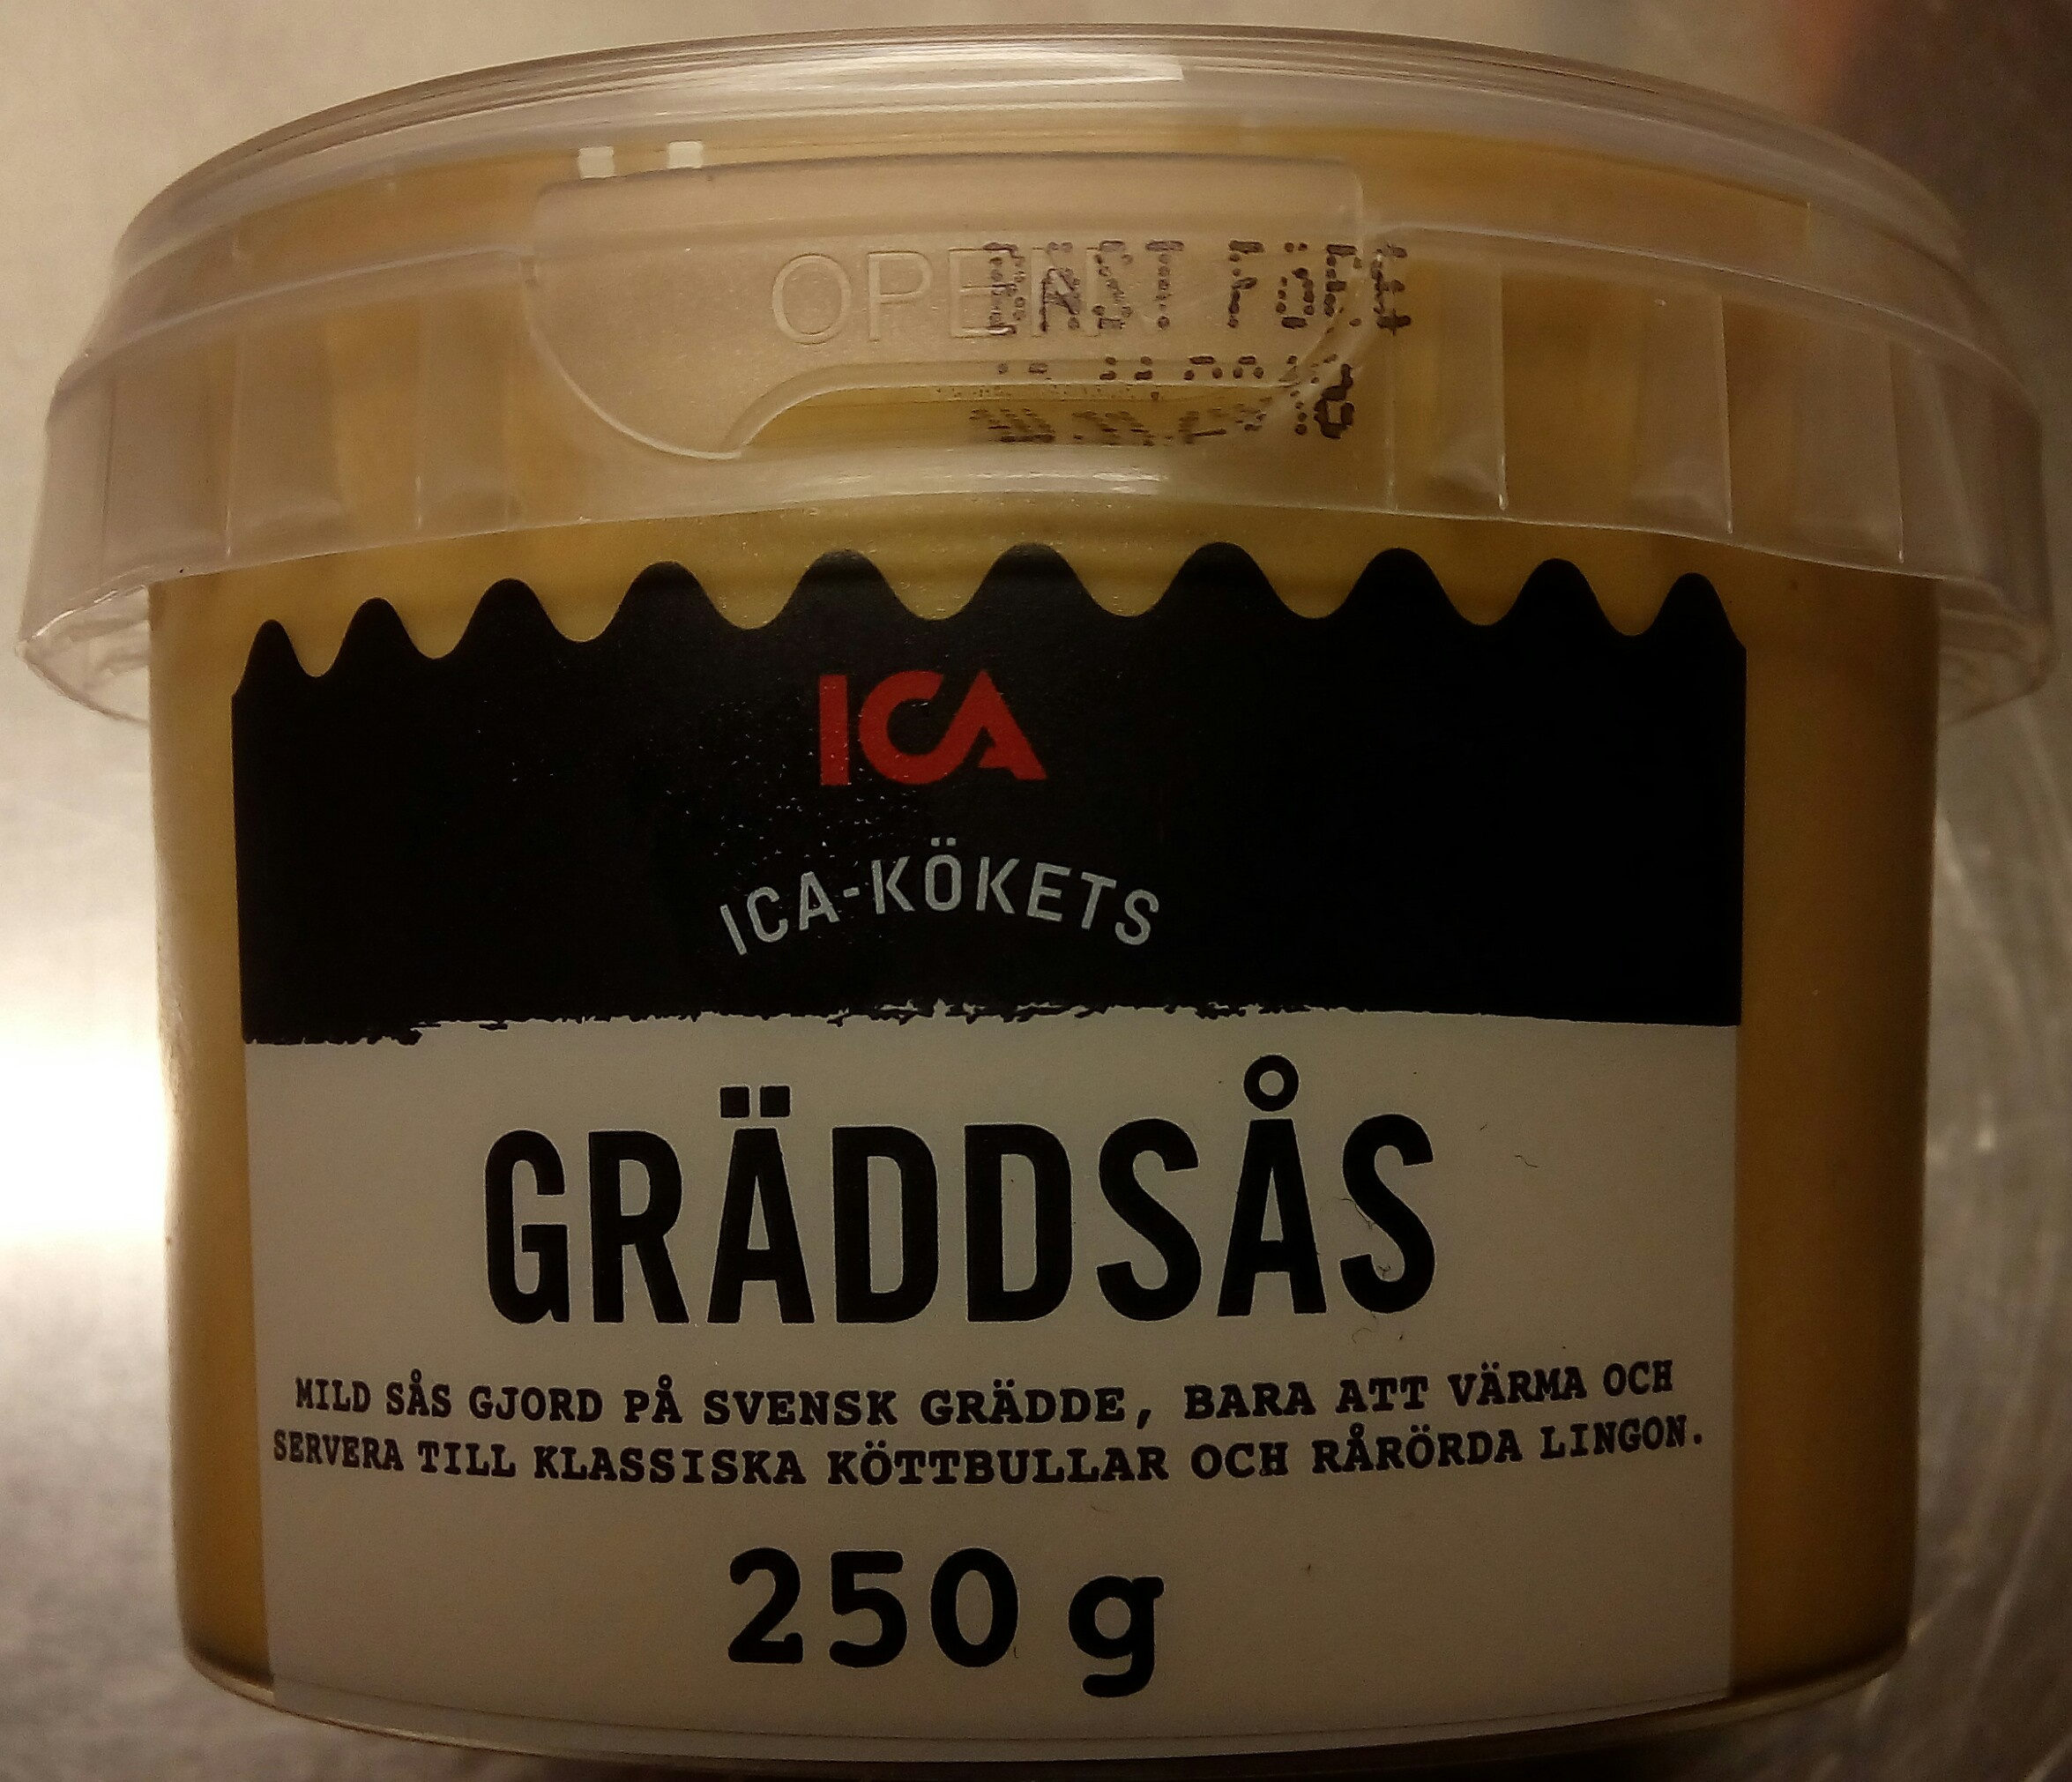 ICA-kökets Gräddsås - Produkt